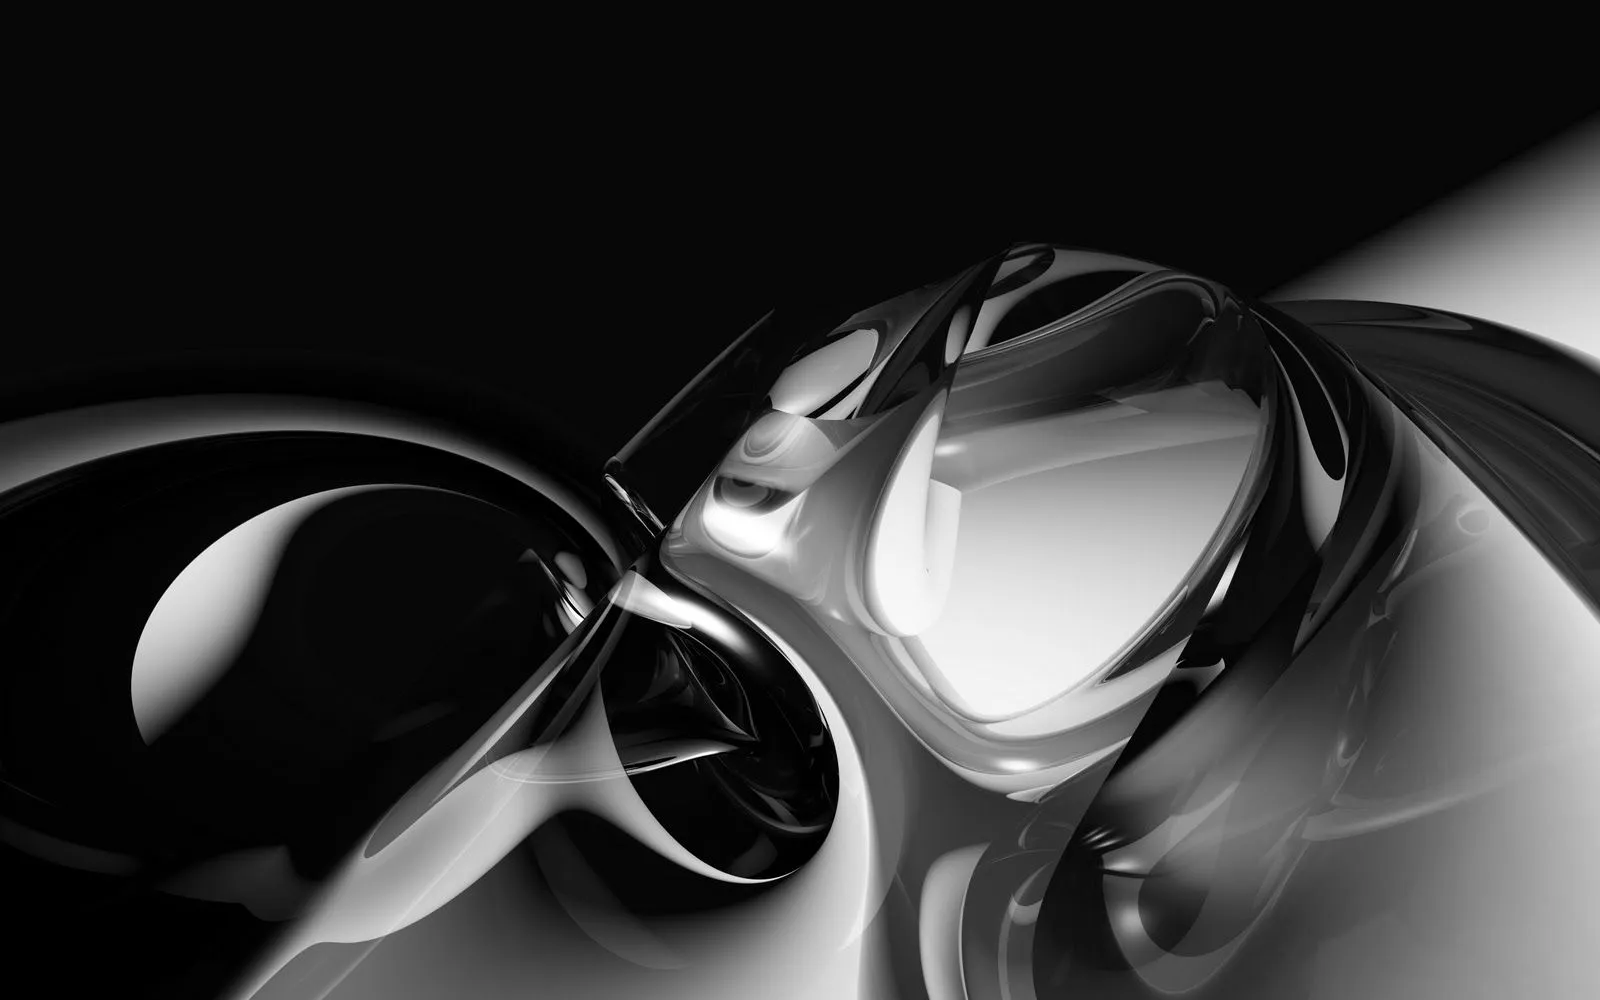 Fondos de pantalla abstractos negros - Imagui